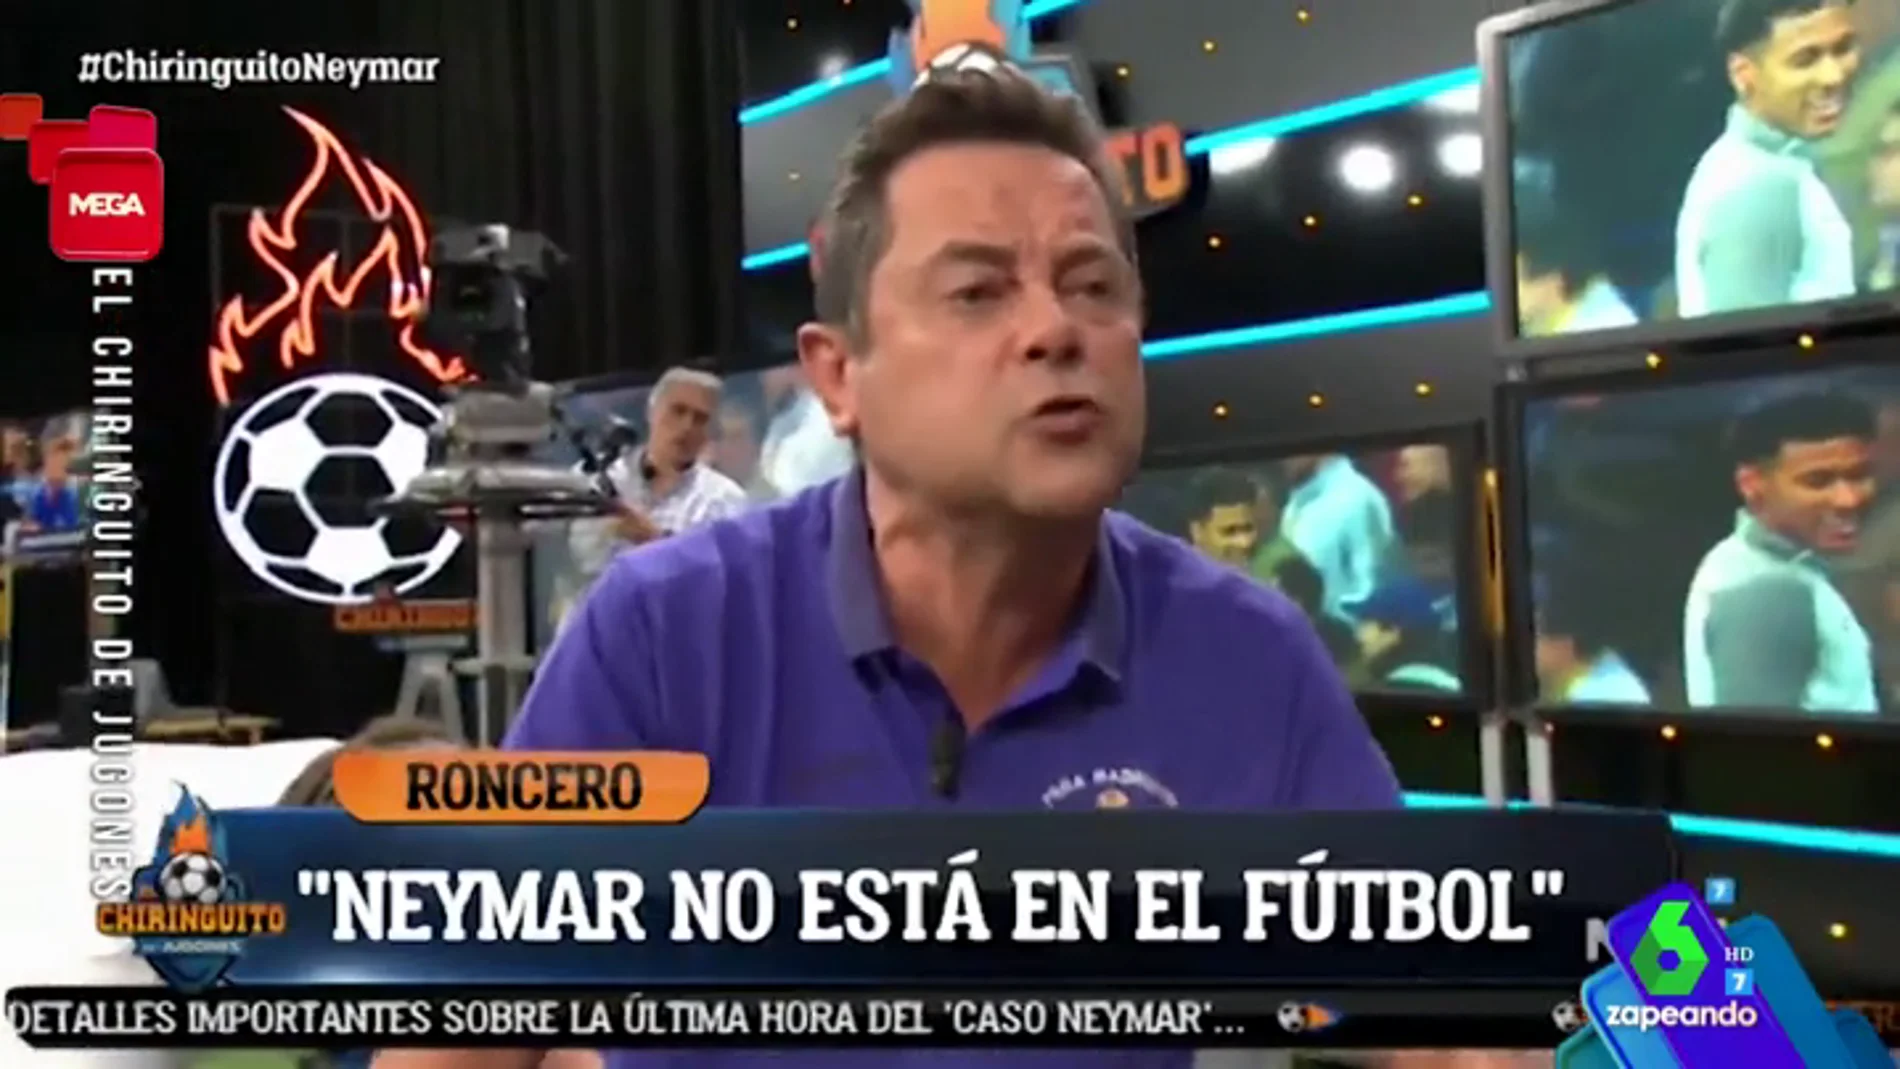 La tensa reacción de Tomás Roncero tras las imágenes de Neymar